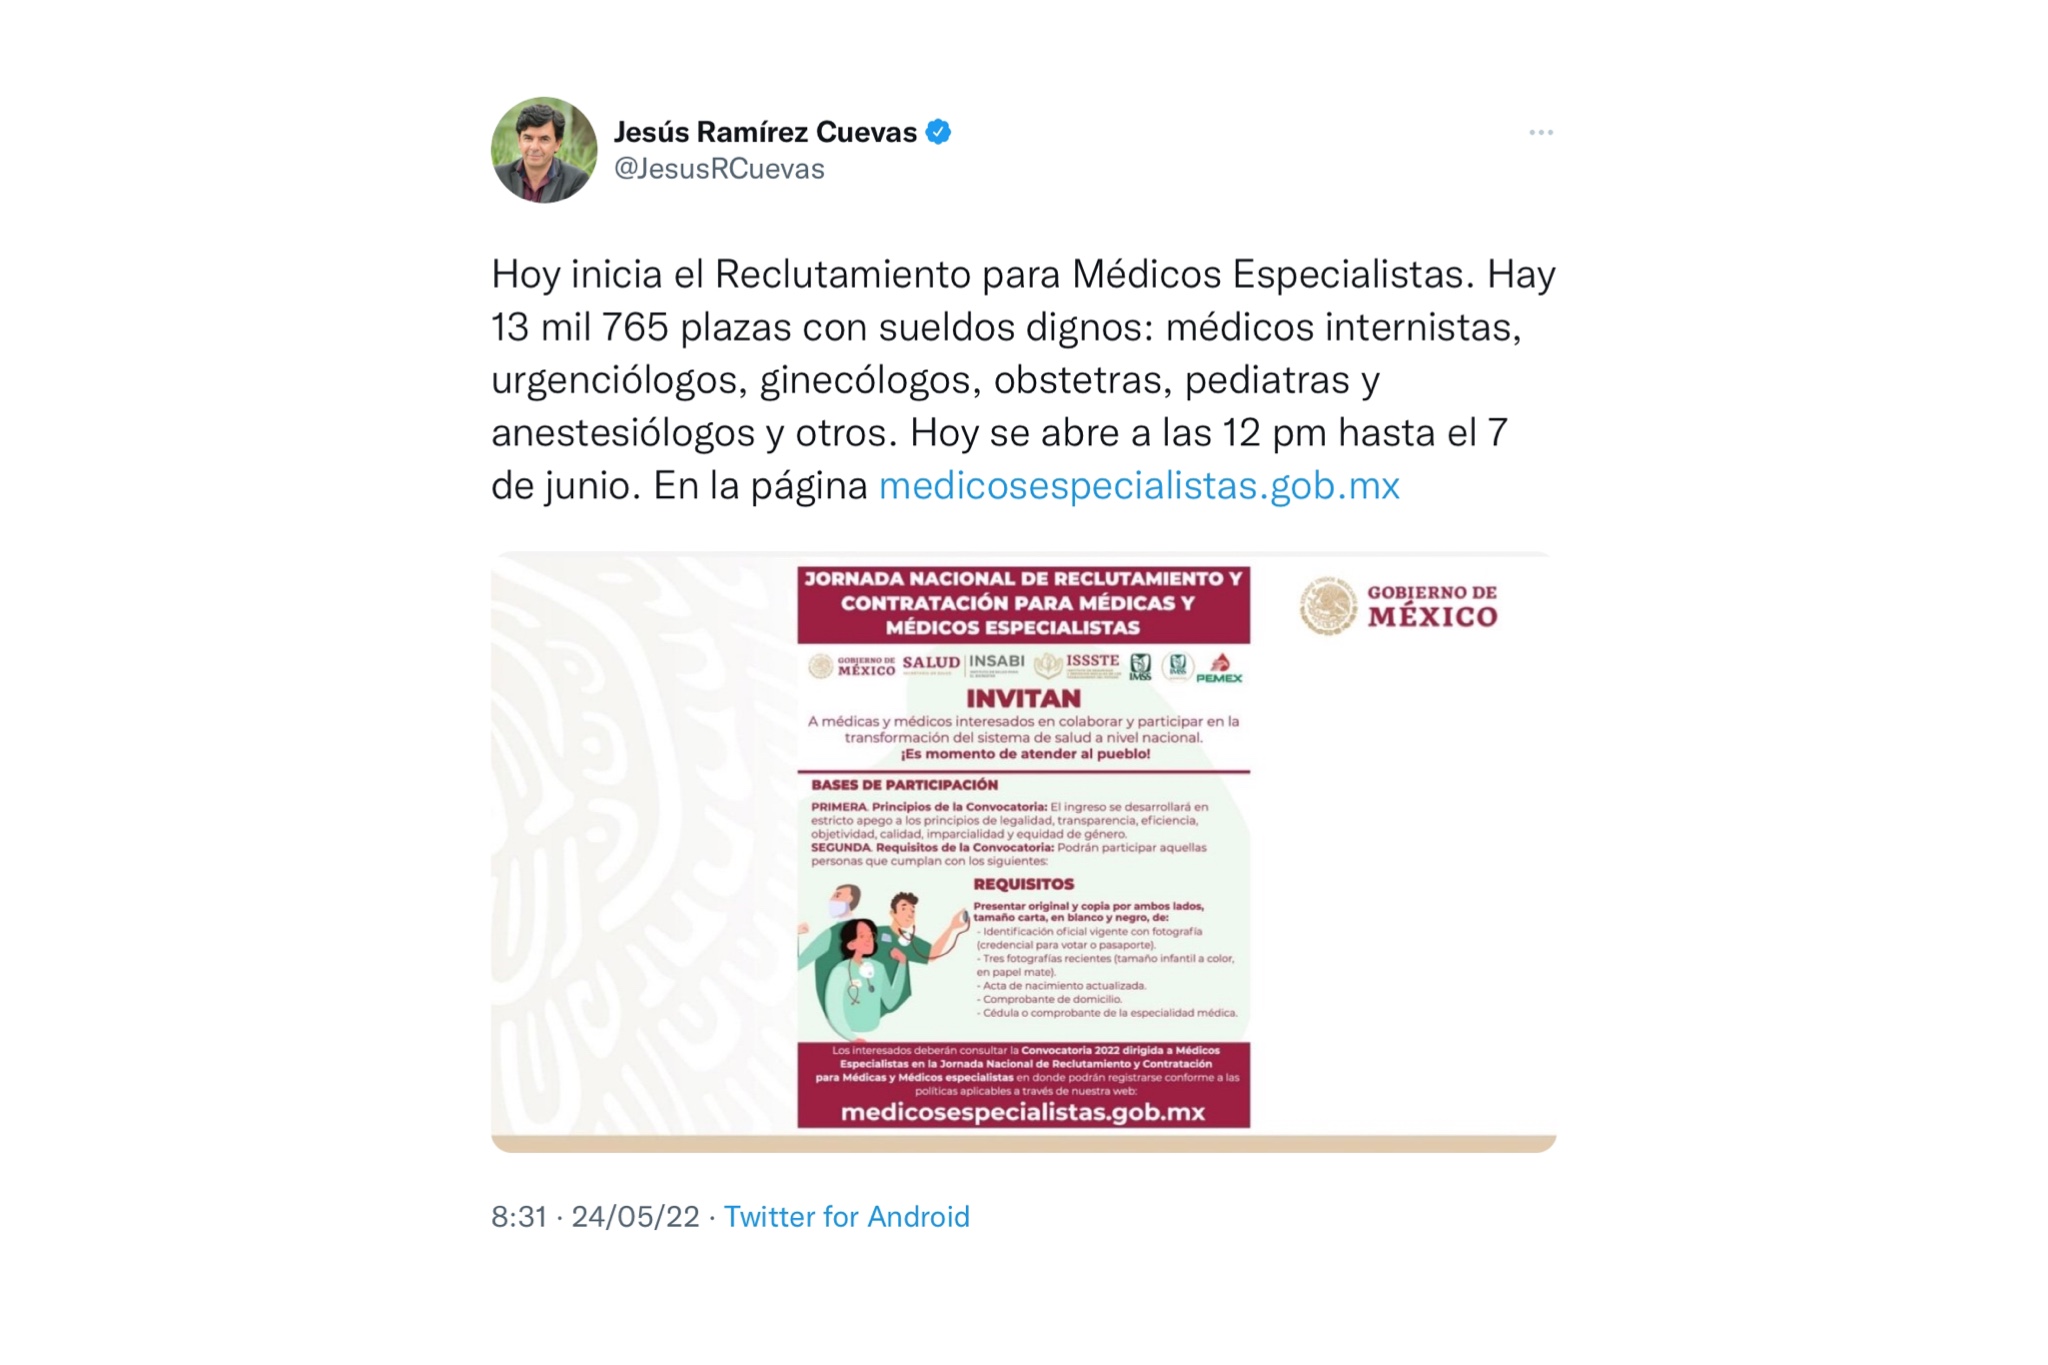 Convocatoria para Médicos Especialistas publicada por el vocero de la presidencia (Foto: Twitter / @JesusRCuevas)